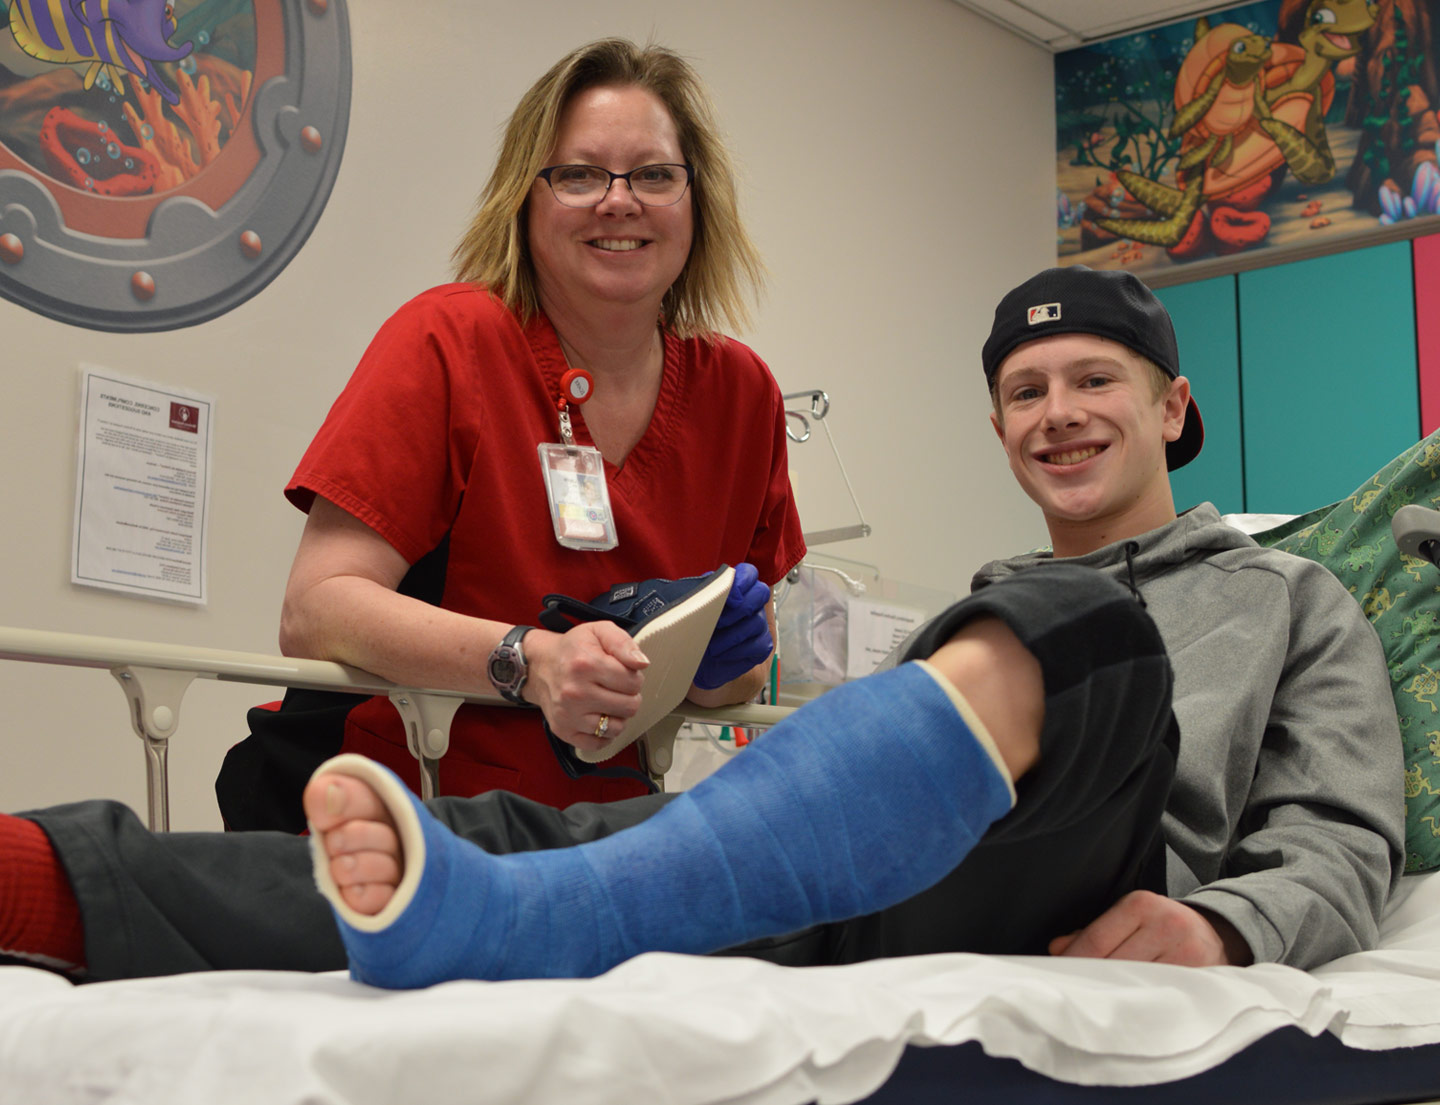 paciente con una fractura que tiene un yeso en la pierna junto con personal de enfermería